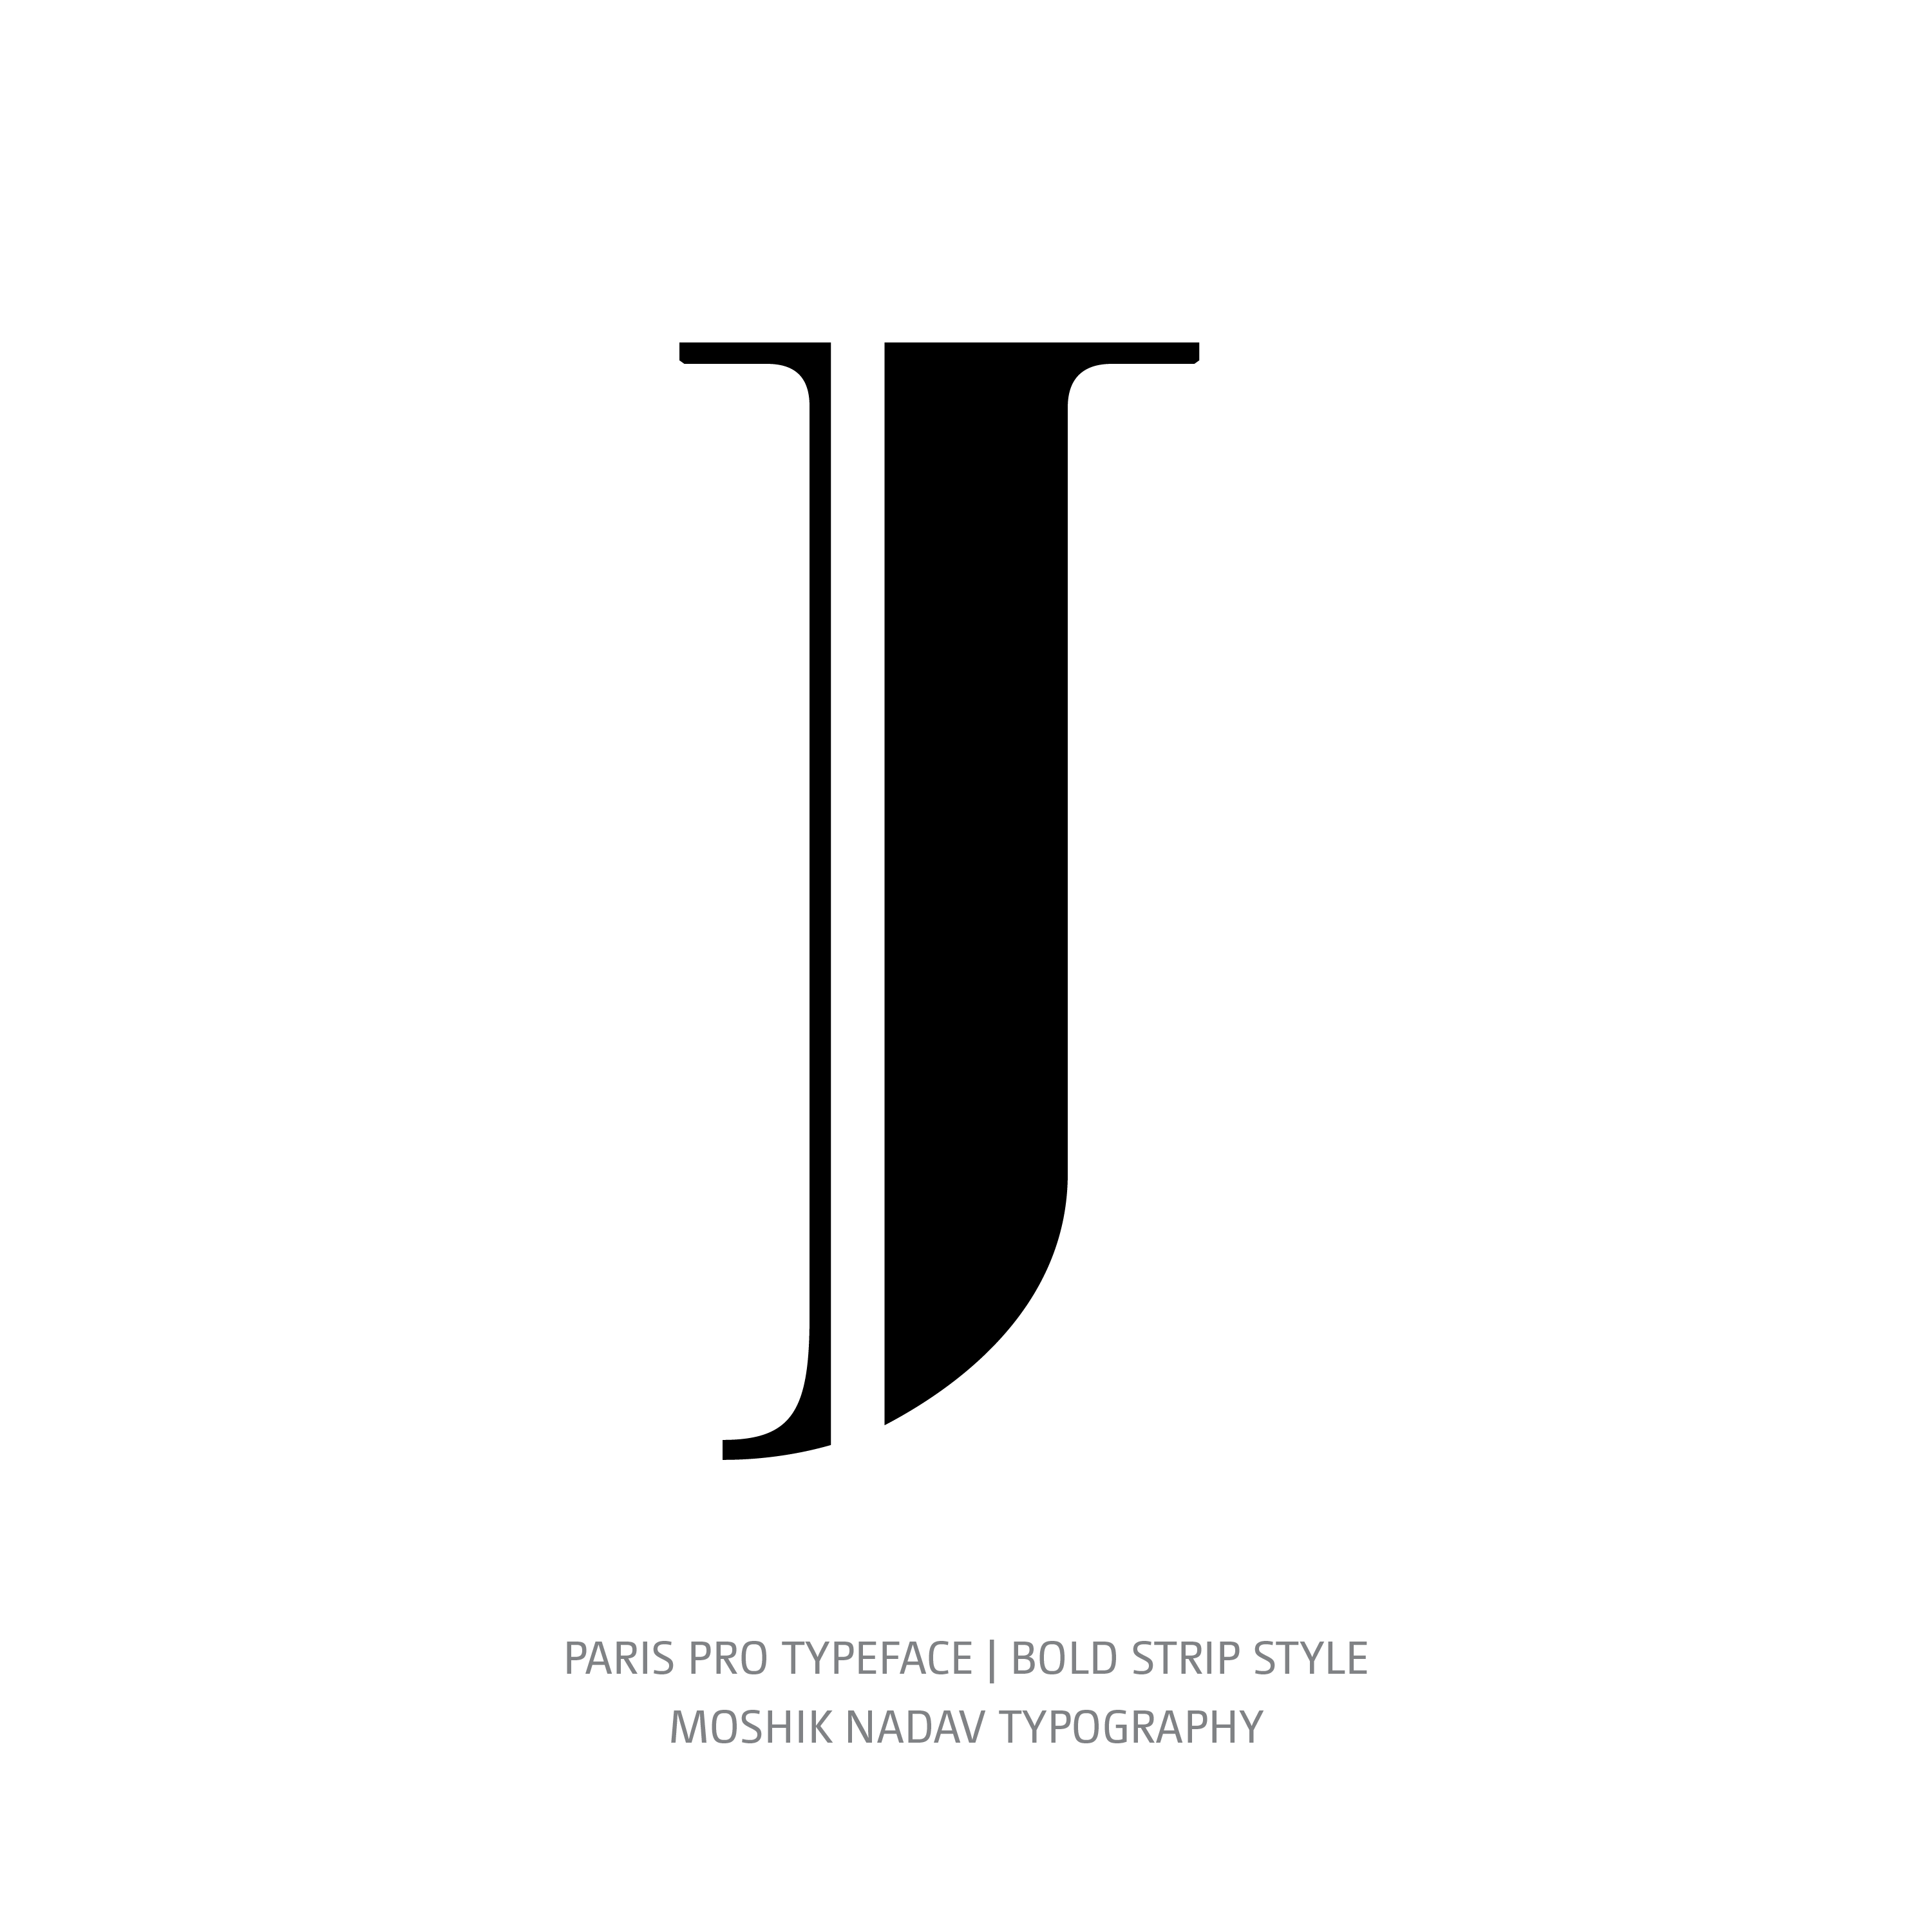 Paris Pro Typeface Bold Strip J